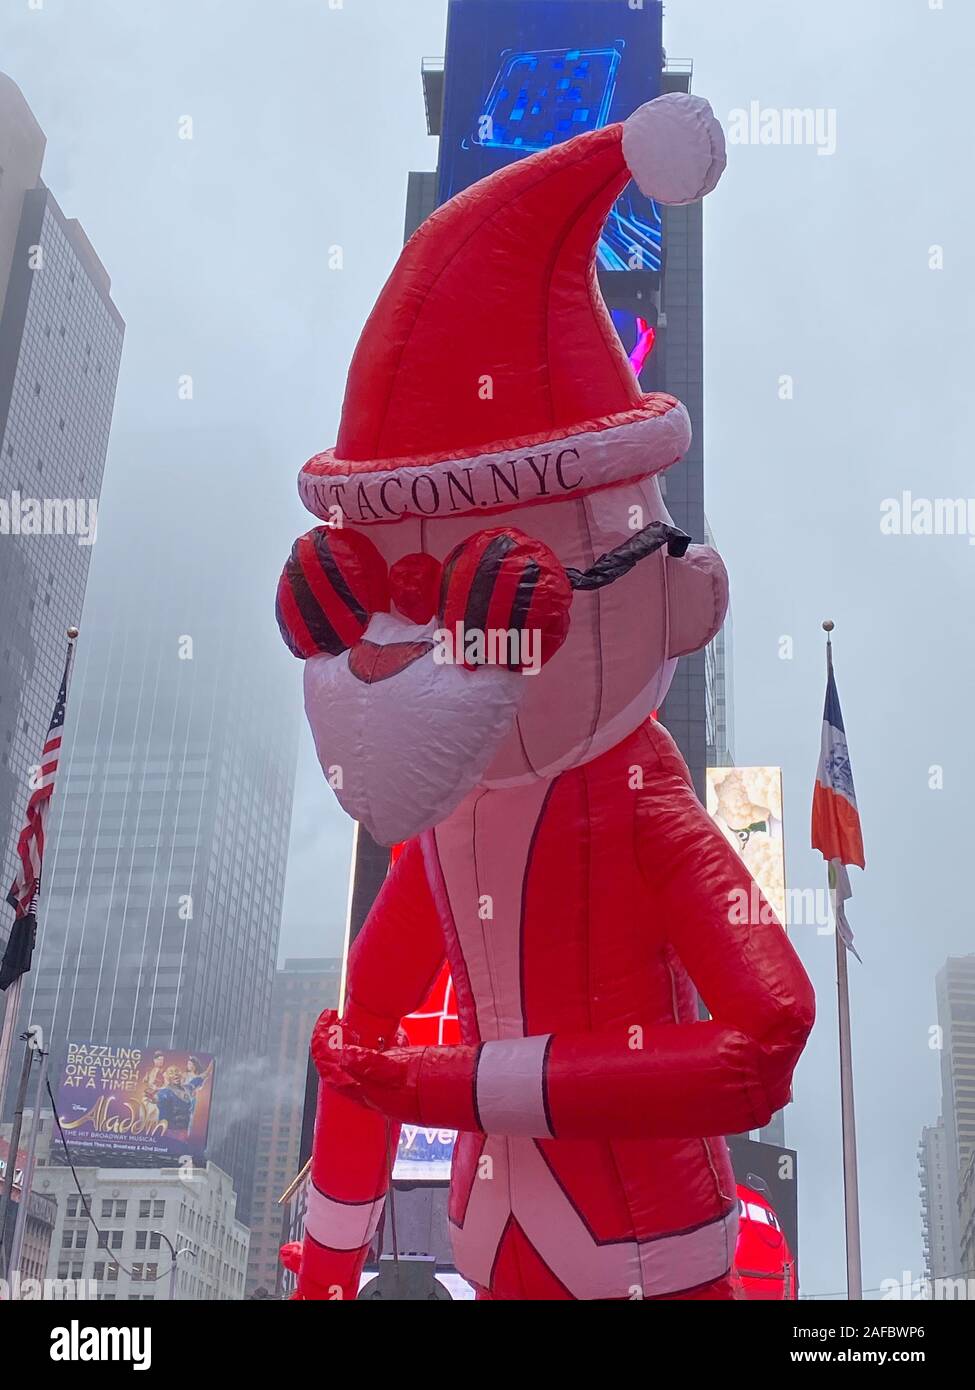 New York, NY, USA. 14 Décembre, 2019. La bohème au début de SantaCon PARIS 2019 bar/pub crawl pour la charité à Times Square à New York le 14 décembre 2019. Rainmaker : Crédit Photo/media/Alamy Punch Live News Banque D'Images